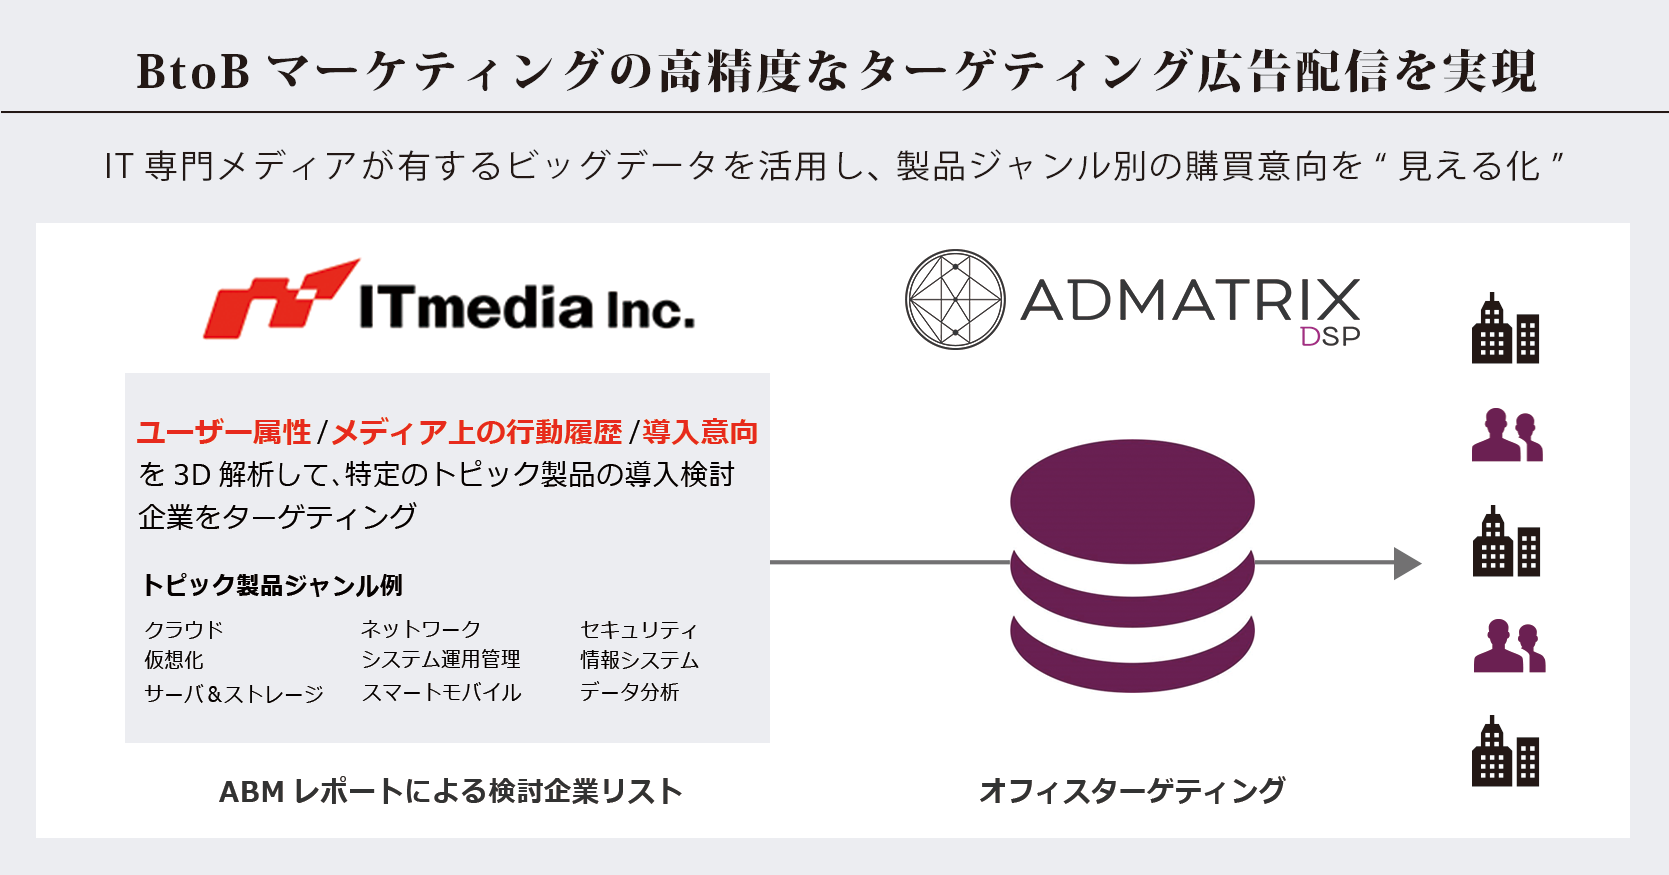 フルスピード、アイティメディア社と「ADMATRIX DSP」のターゲティング広告にて協業を開始